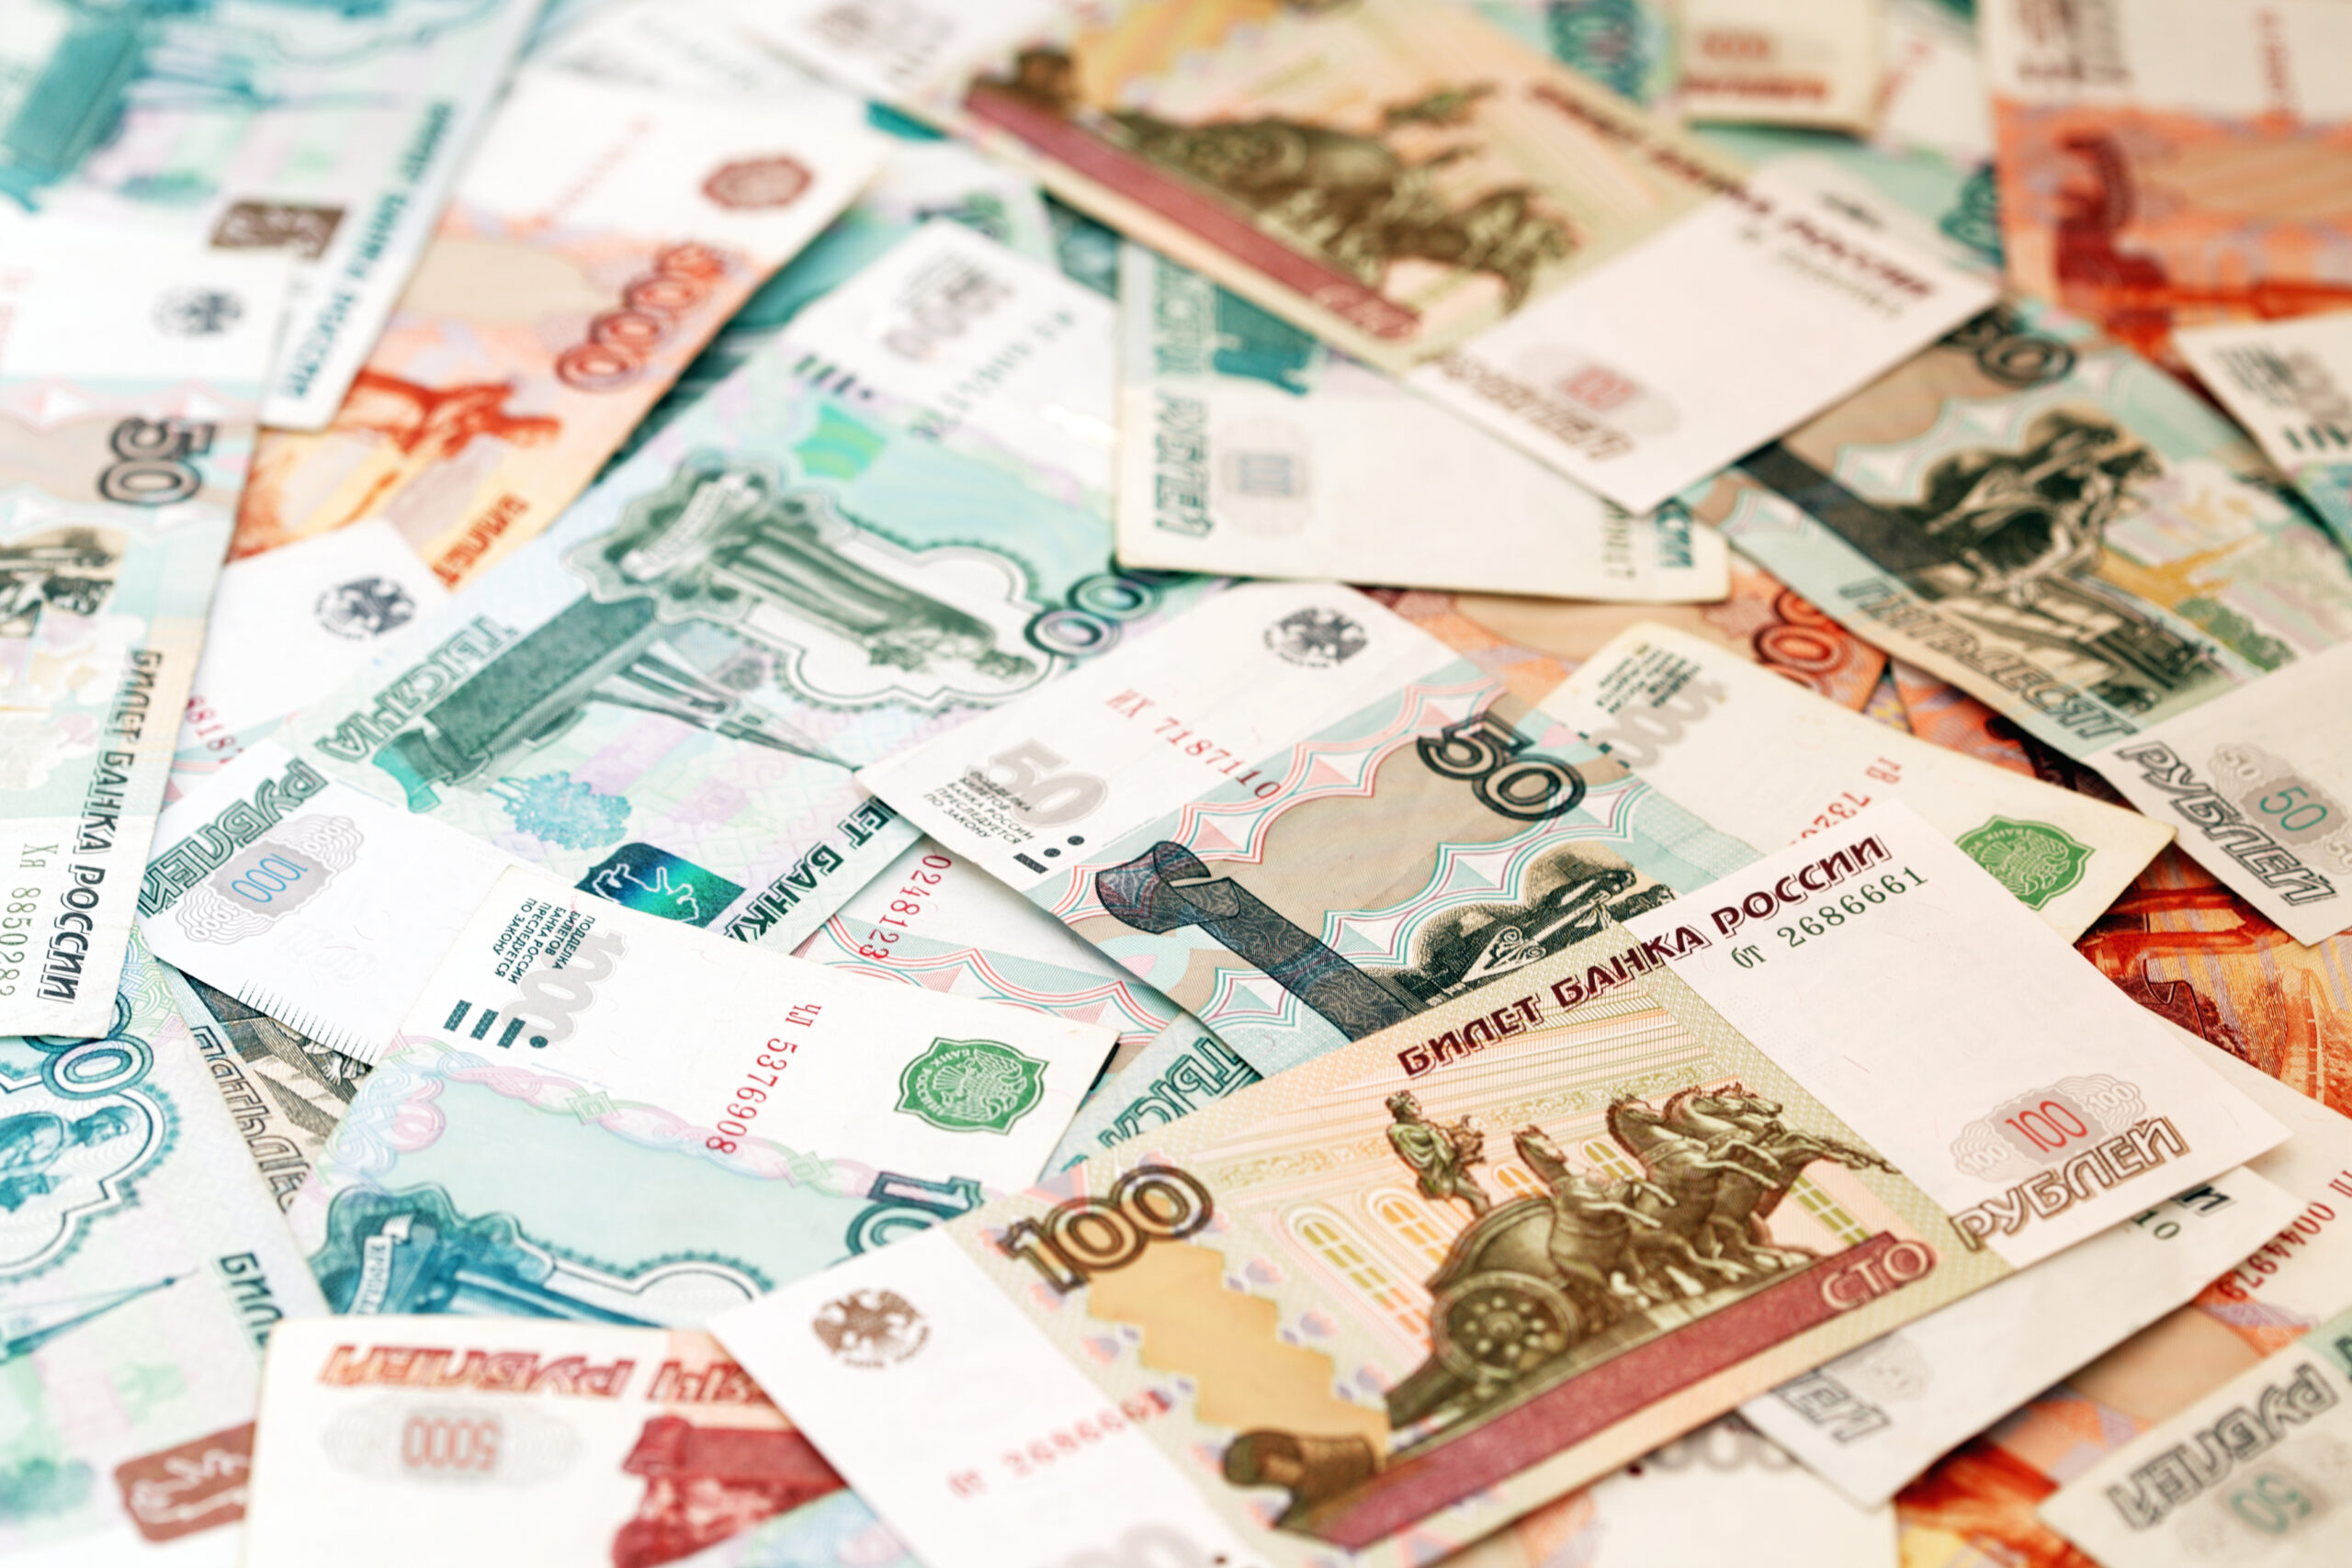 El rublo se ha convertido en la moneda oficial en la región de Kherson de Ucrania ocupada por Rusia.